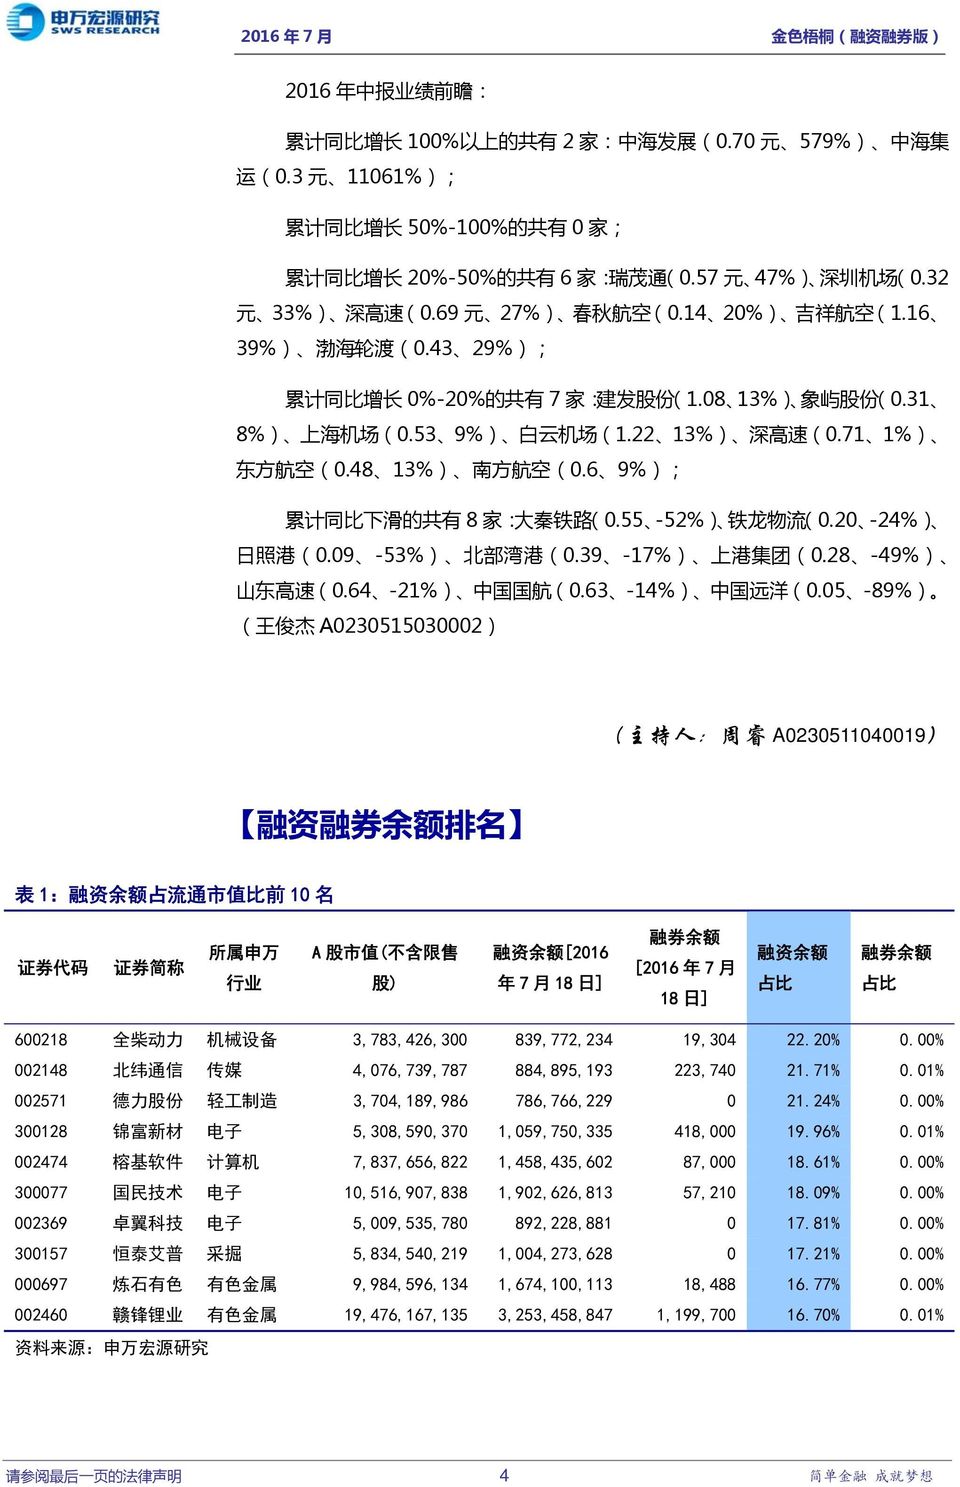 22 13%) 深 高 速 (0.71 1%) 东 方 航 空 (0.48 13%) 南 方 航 空 (0.6 9%); 累 计 同 比 下 滑 的 共 有 8 家 : 大 秦 铁 路 (0.55-52%) 铁 龙 物 流 (0.20-24%) 日 照 港 (0.09-53%) 北 部 湾 港 (0.39-17%) 上 港 集 团 (0.28-49%) 山 东 高 速 (0.